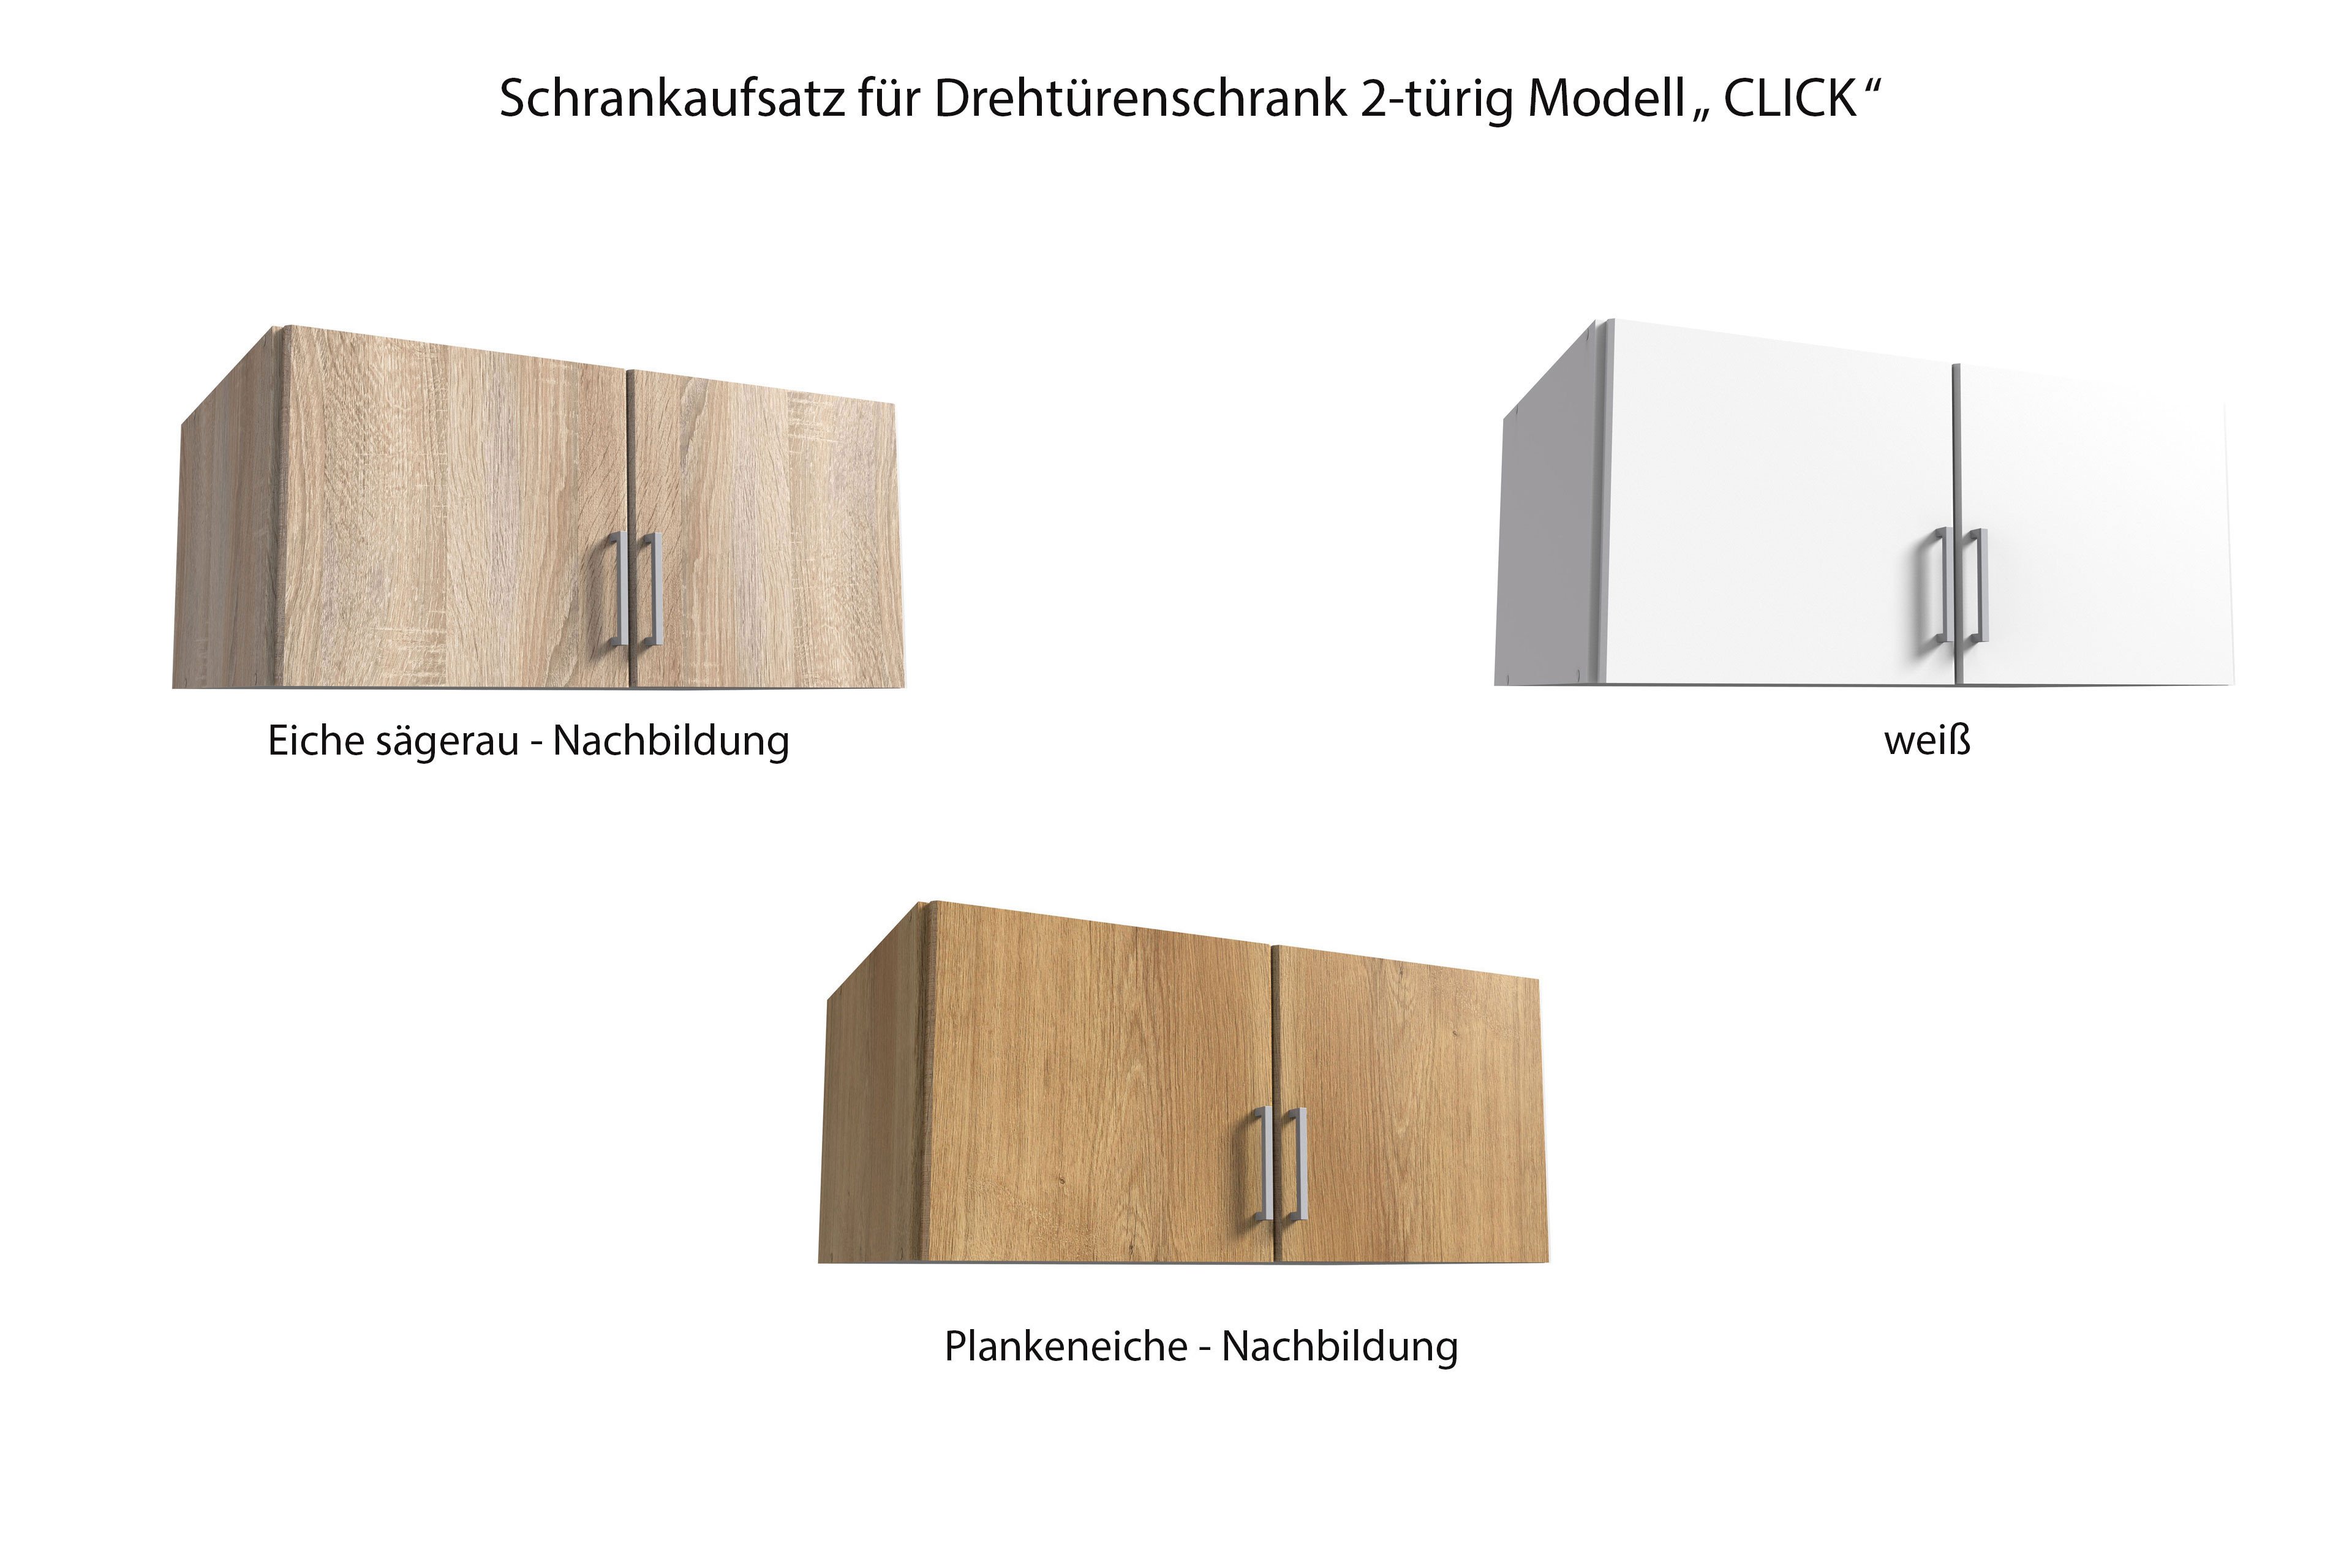 Wimex Schrank Click Eiche sägerau Nachbildung | Möbel Letz - Ihr Online-Shop | Schranksysteme